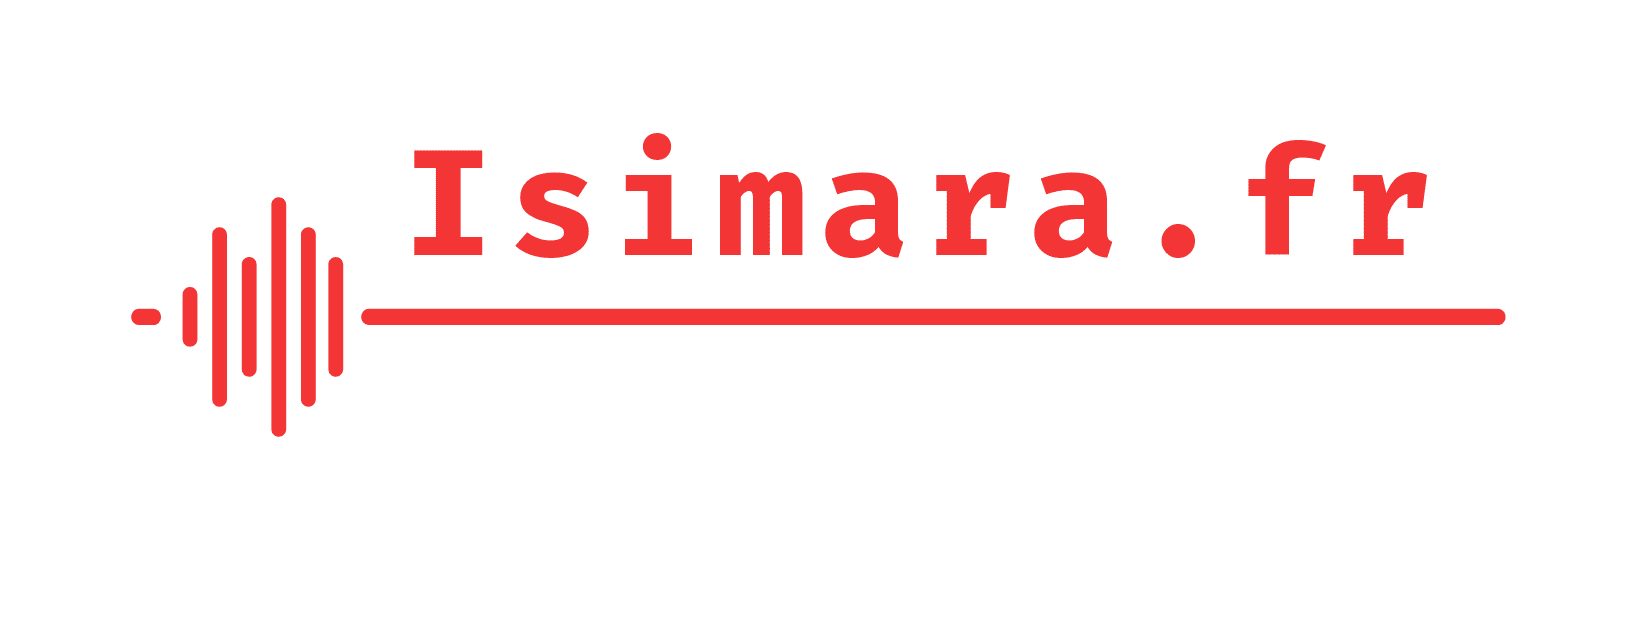 Isimara